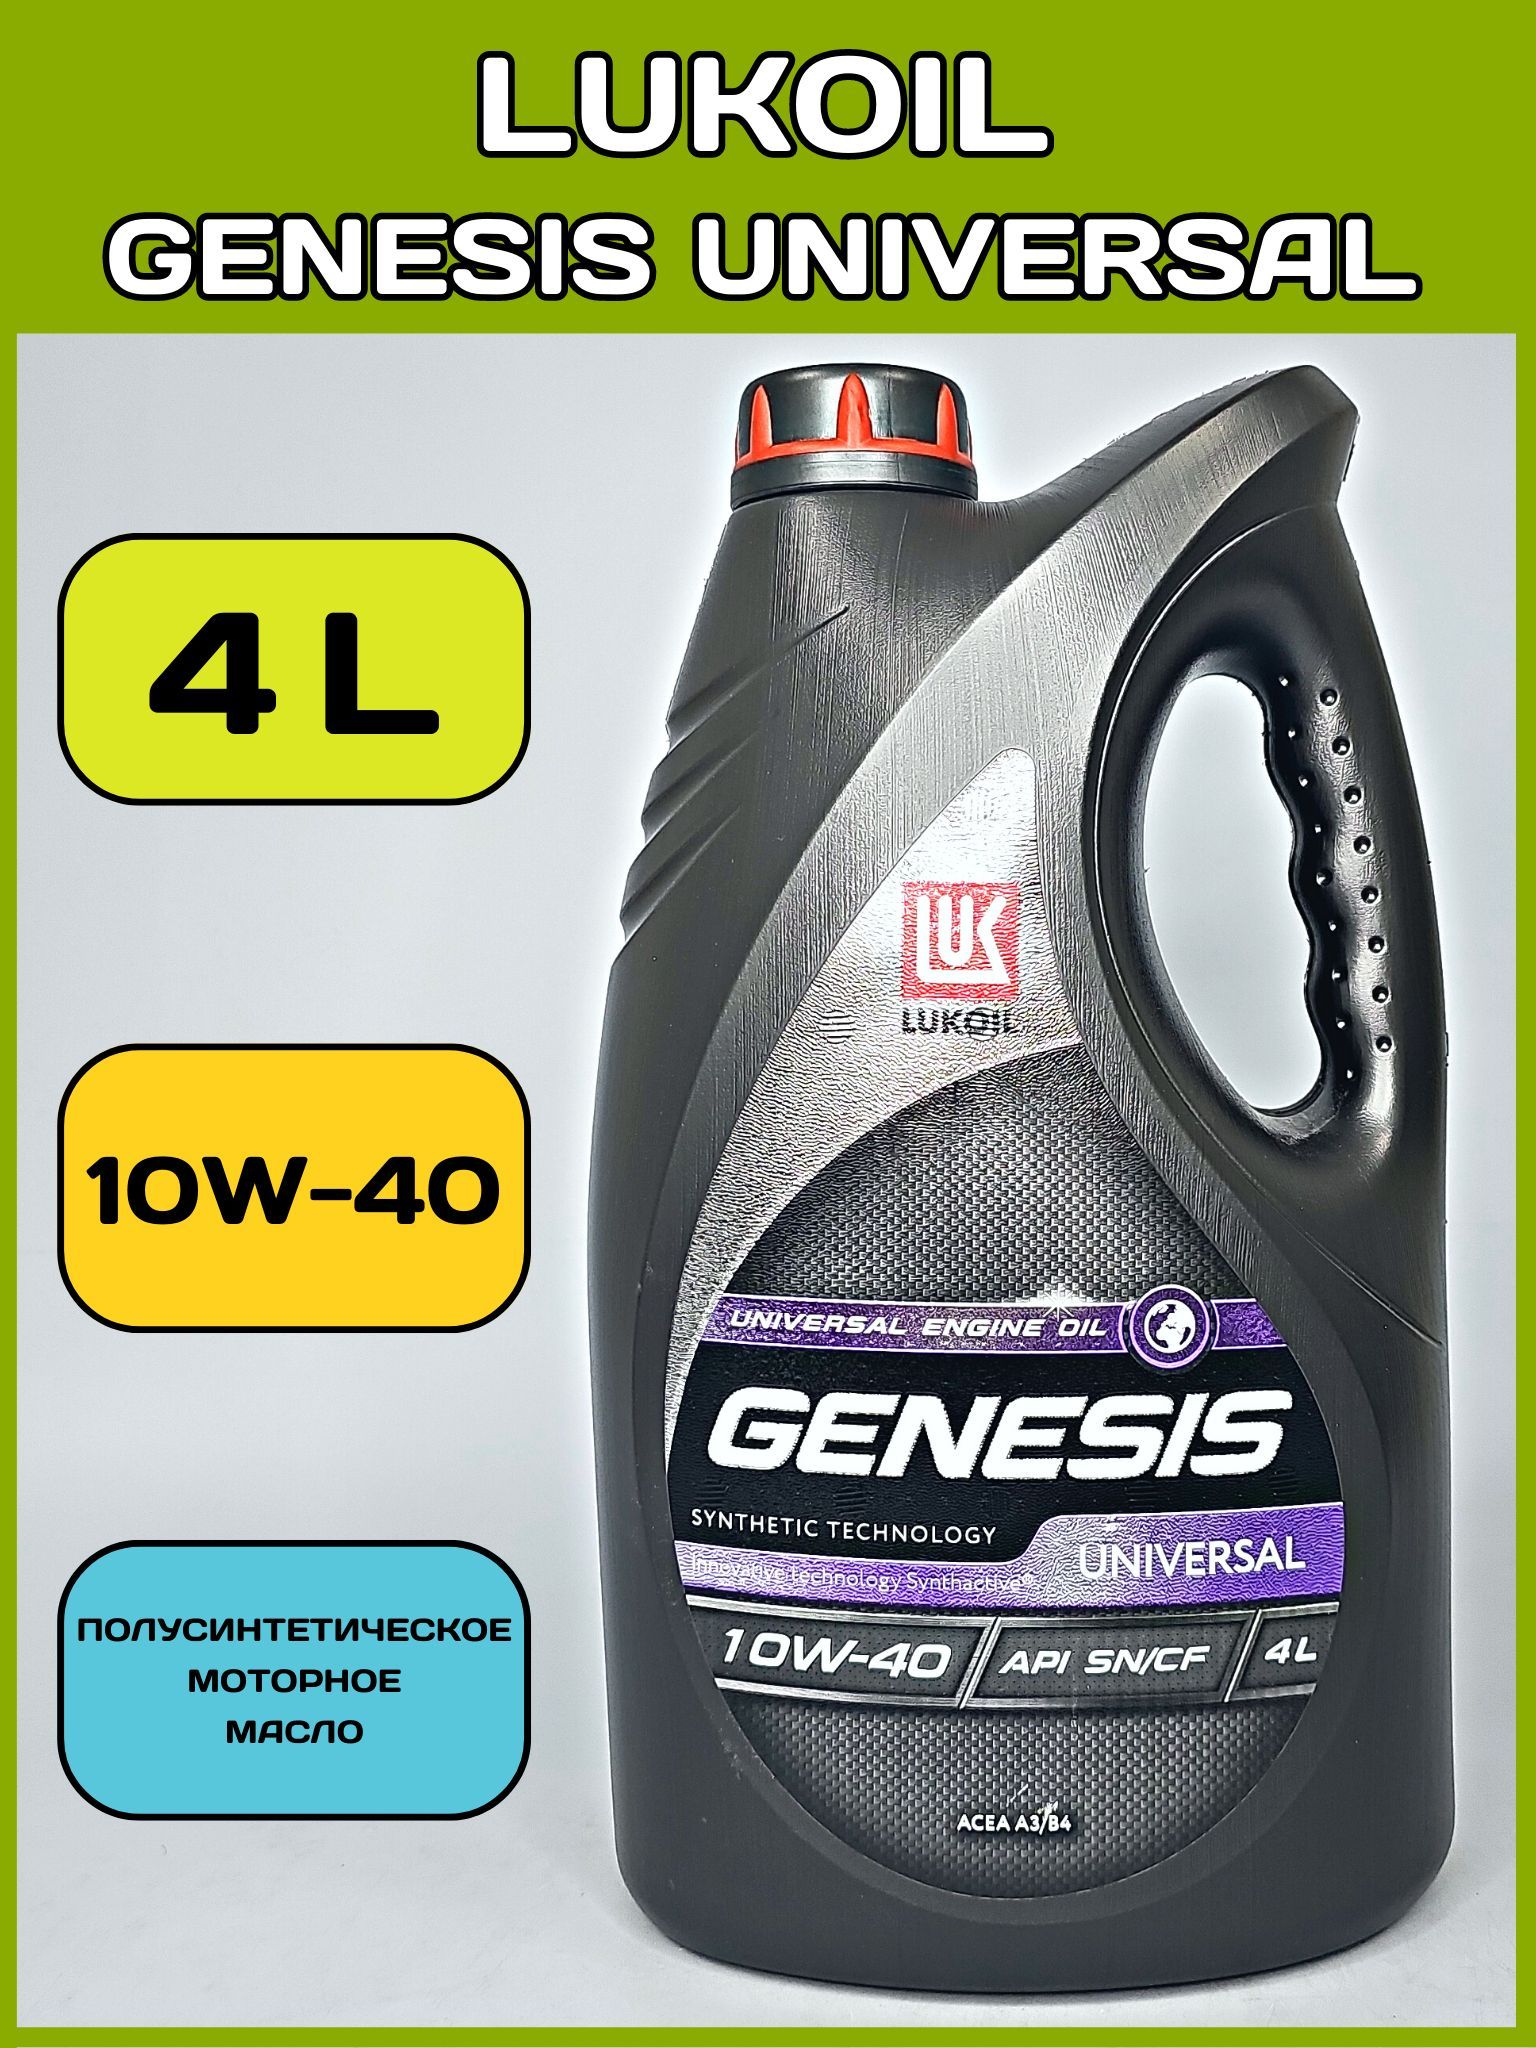 Генезис универсал 10w 40 полусинтетика характеристики. Универсальная масло м 8 в. Лукойл генезис универсал отзывы